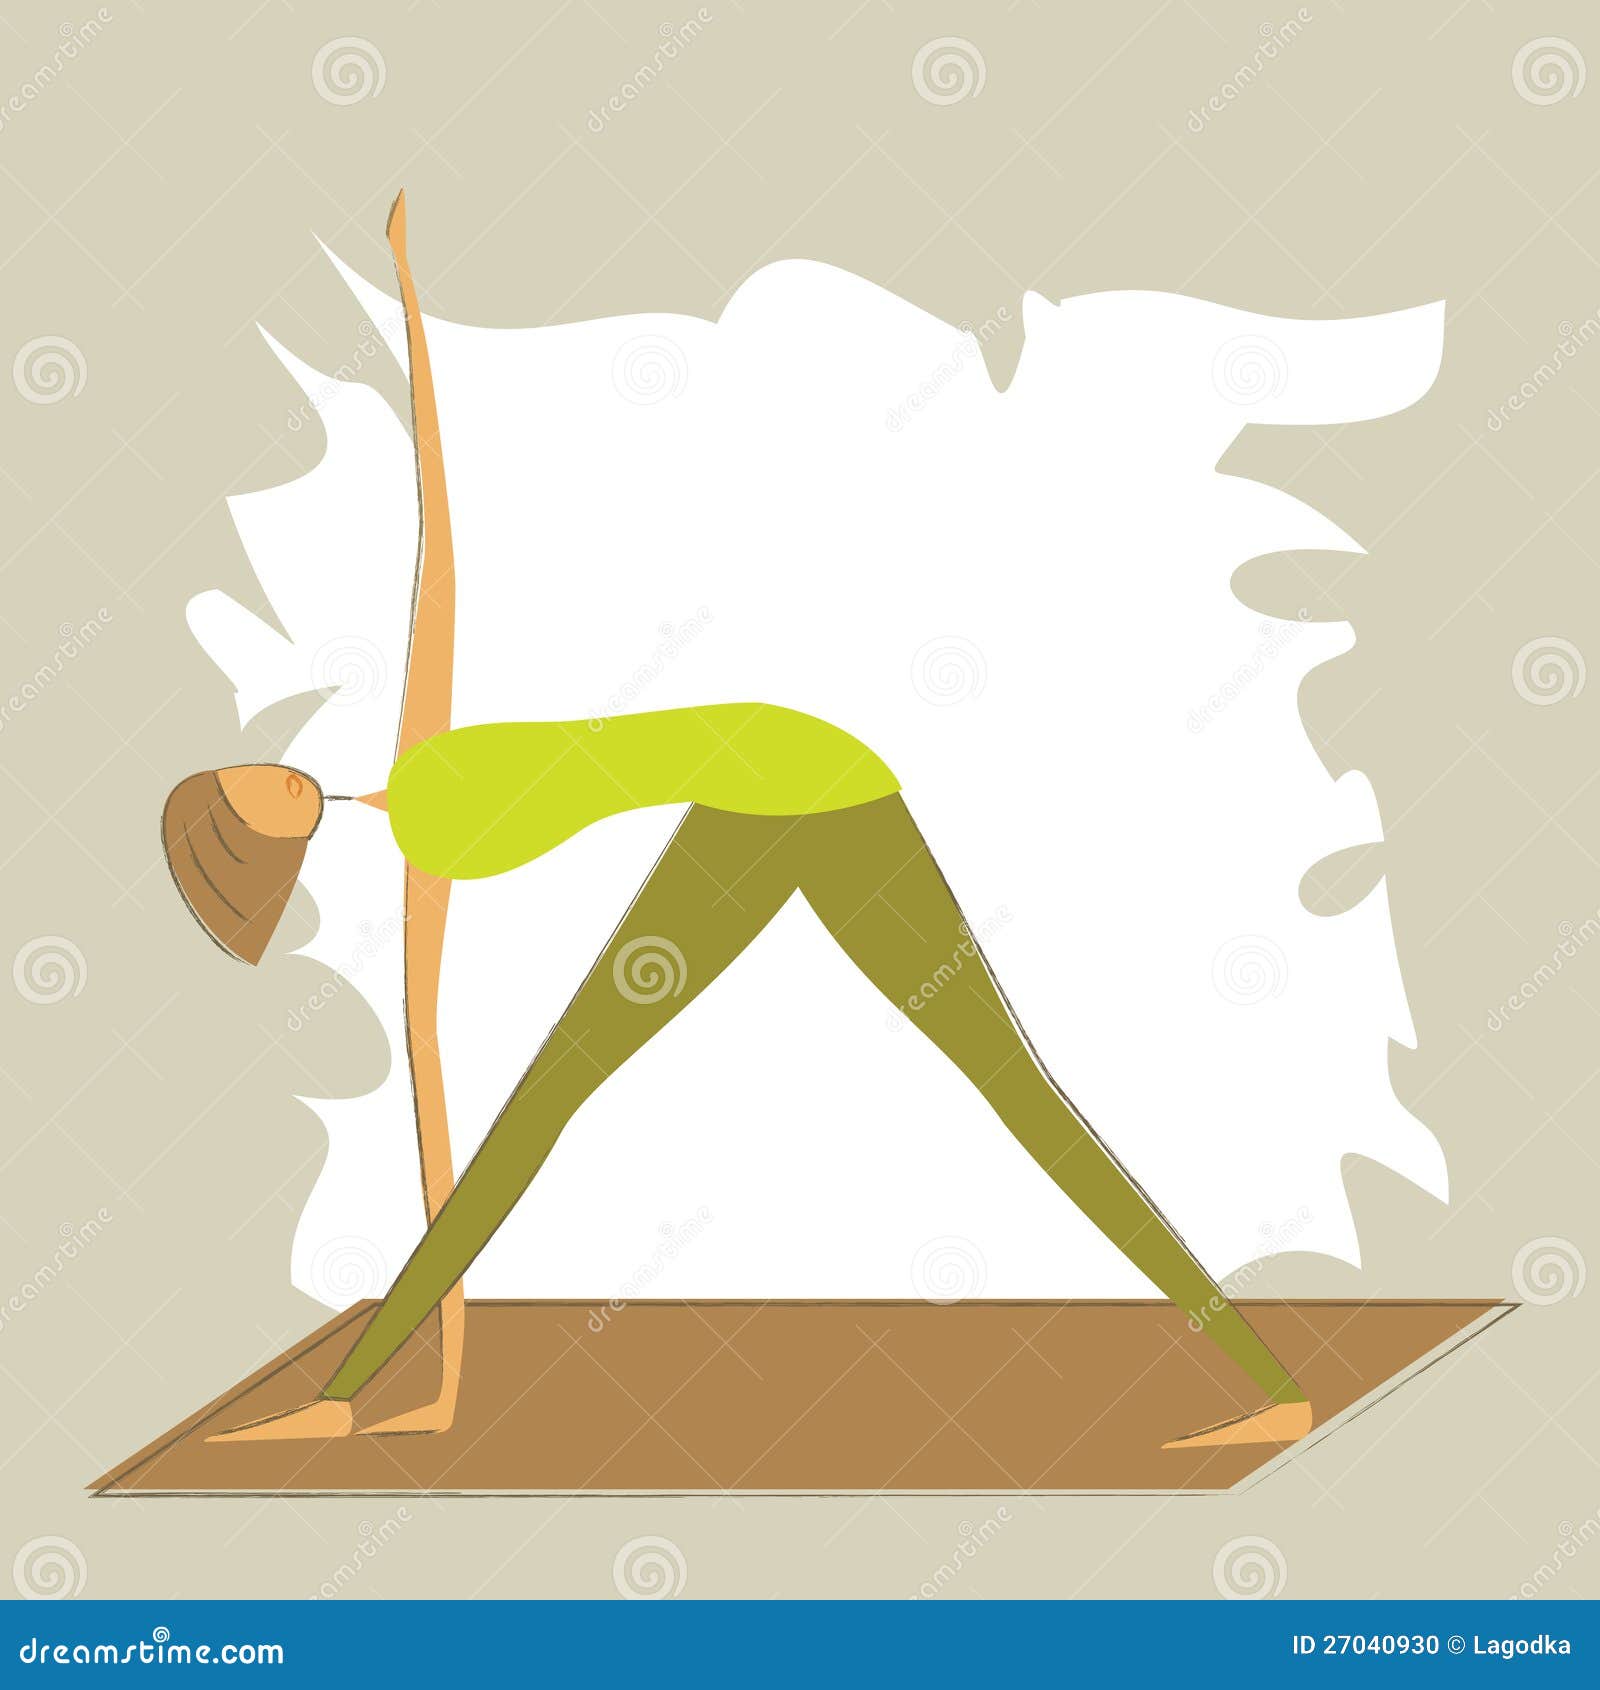 clipart yoga poses stylized - photo #45